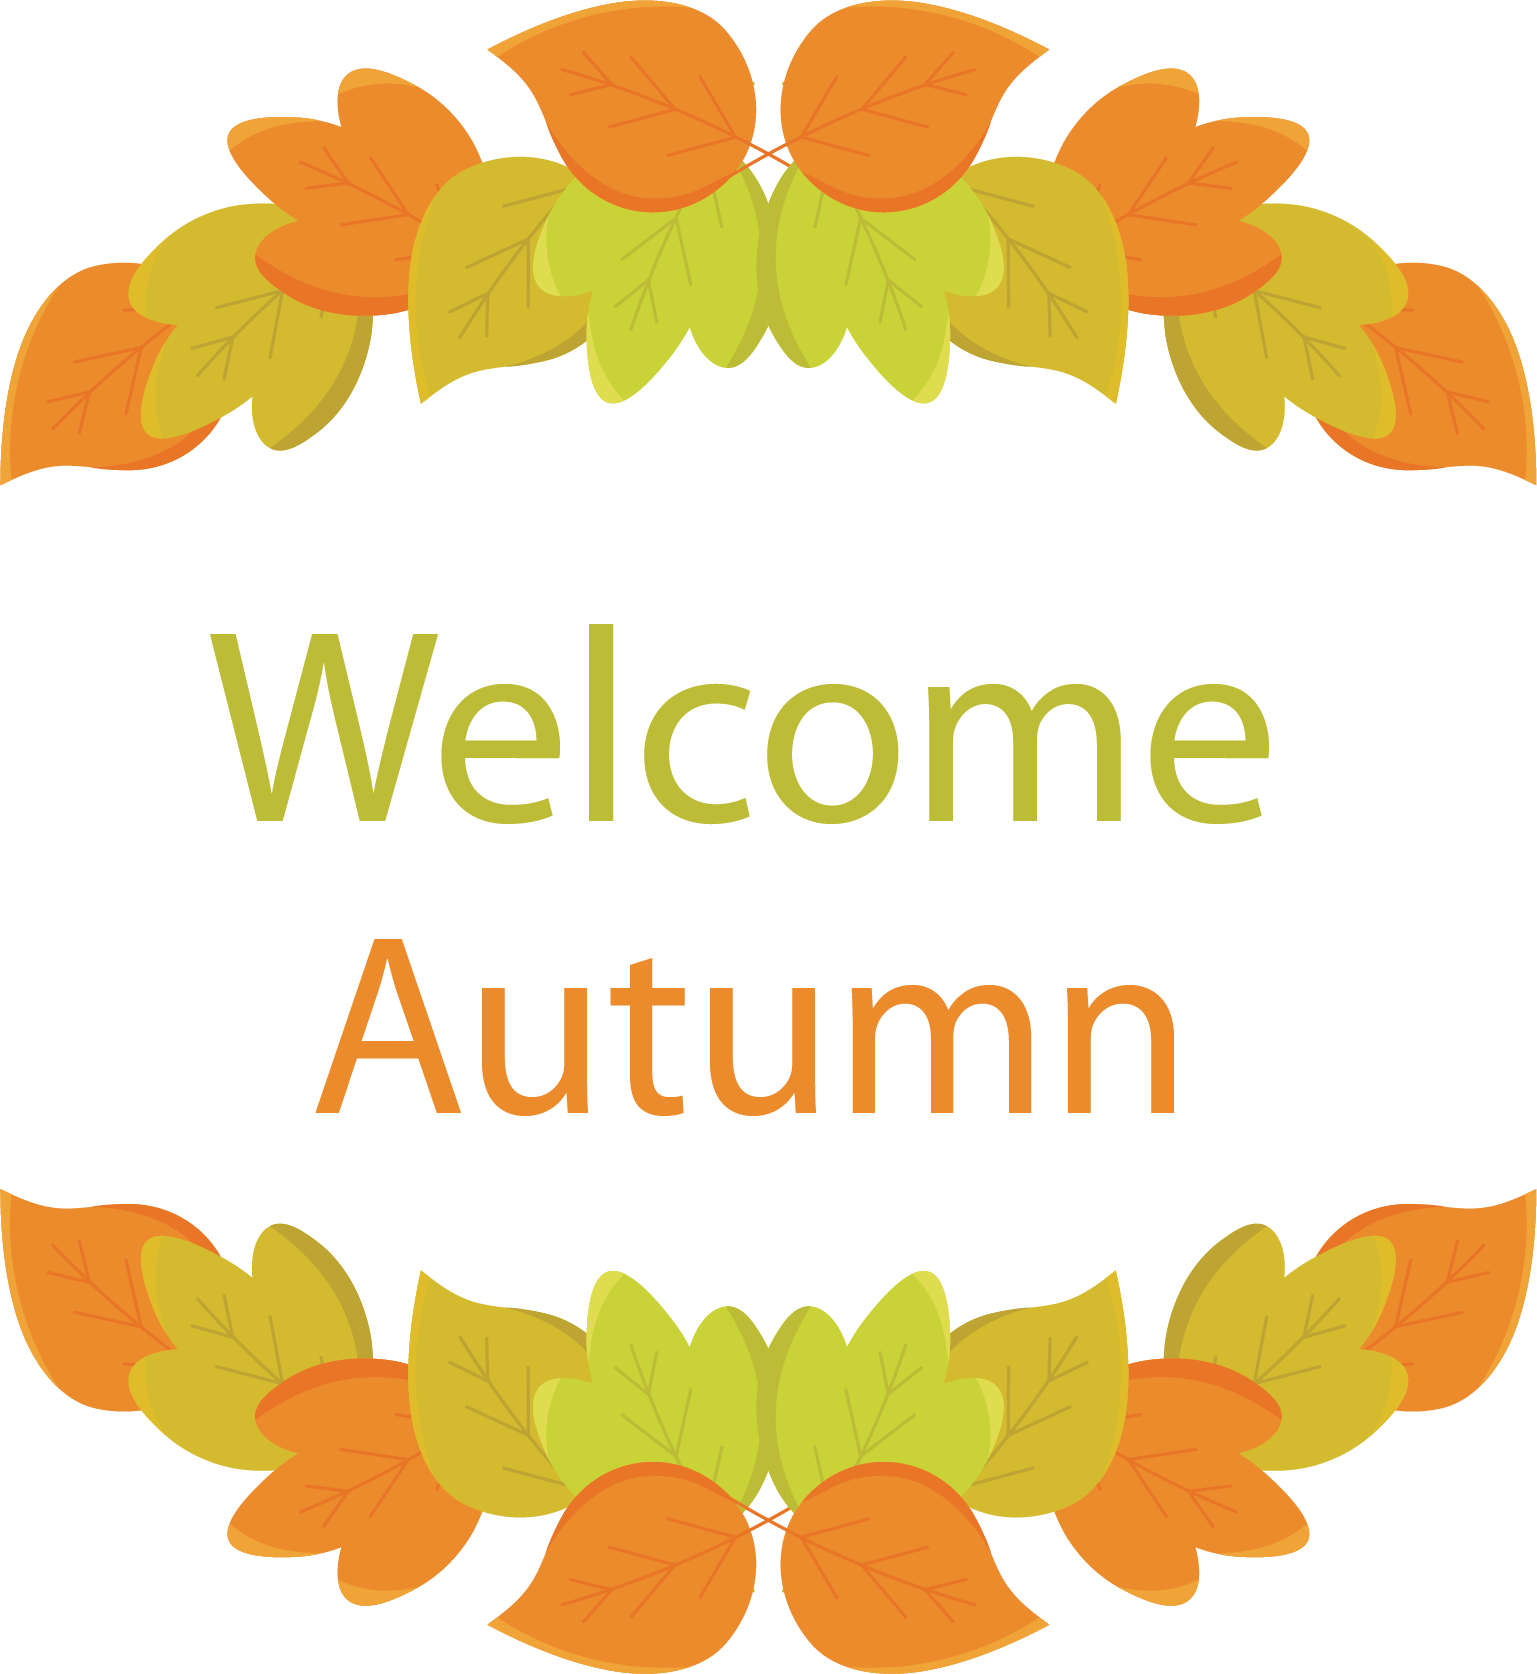 Welcome Autumn Vector - Welcome Autumn Vector (1537x1674)